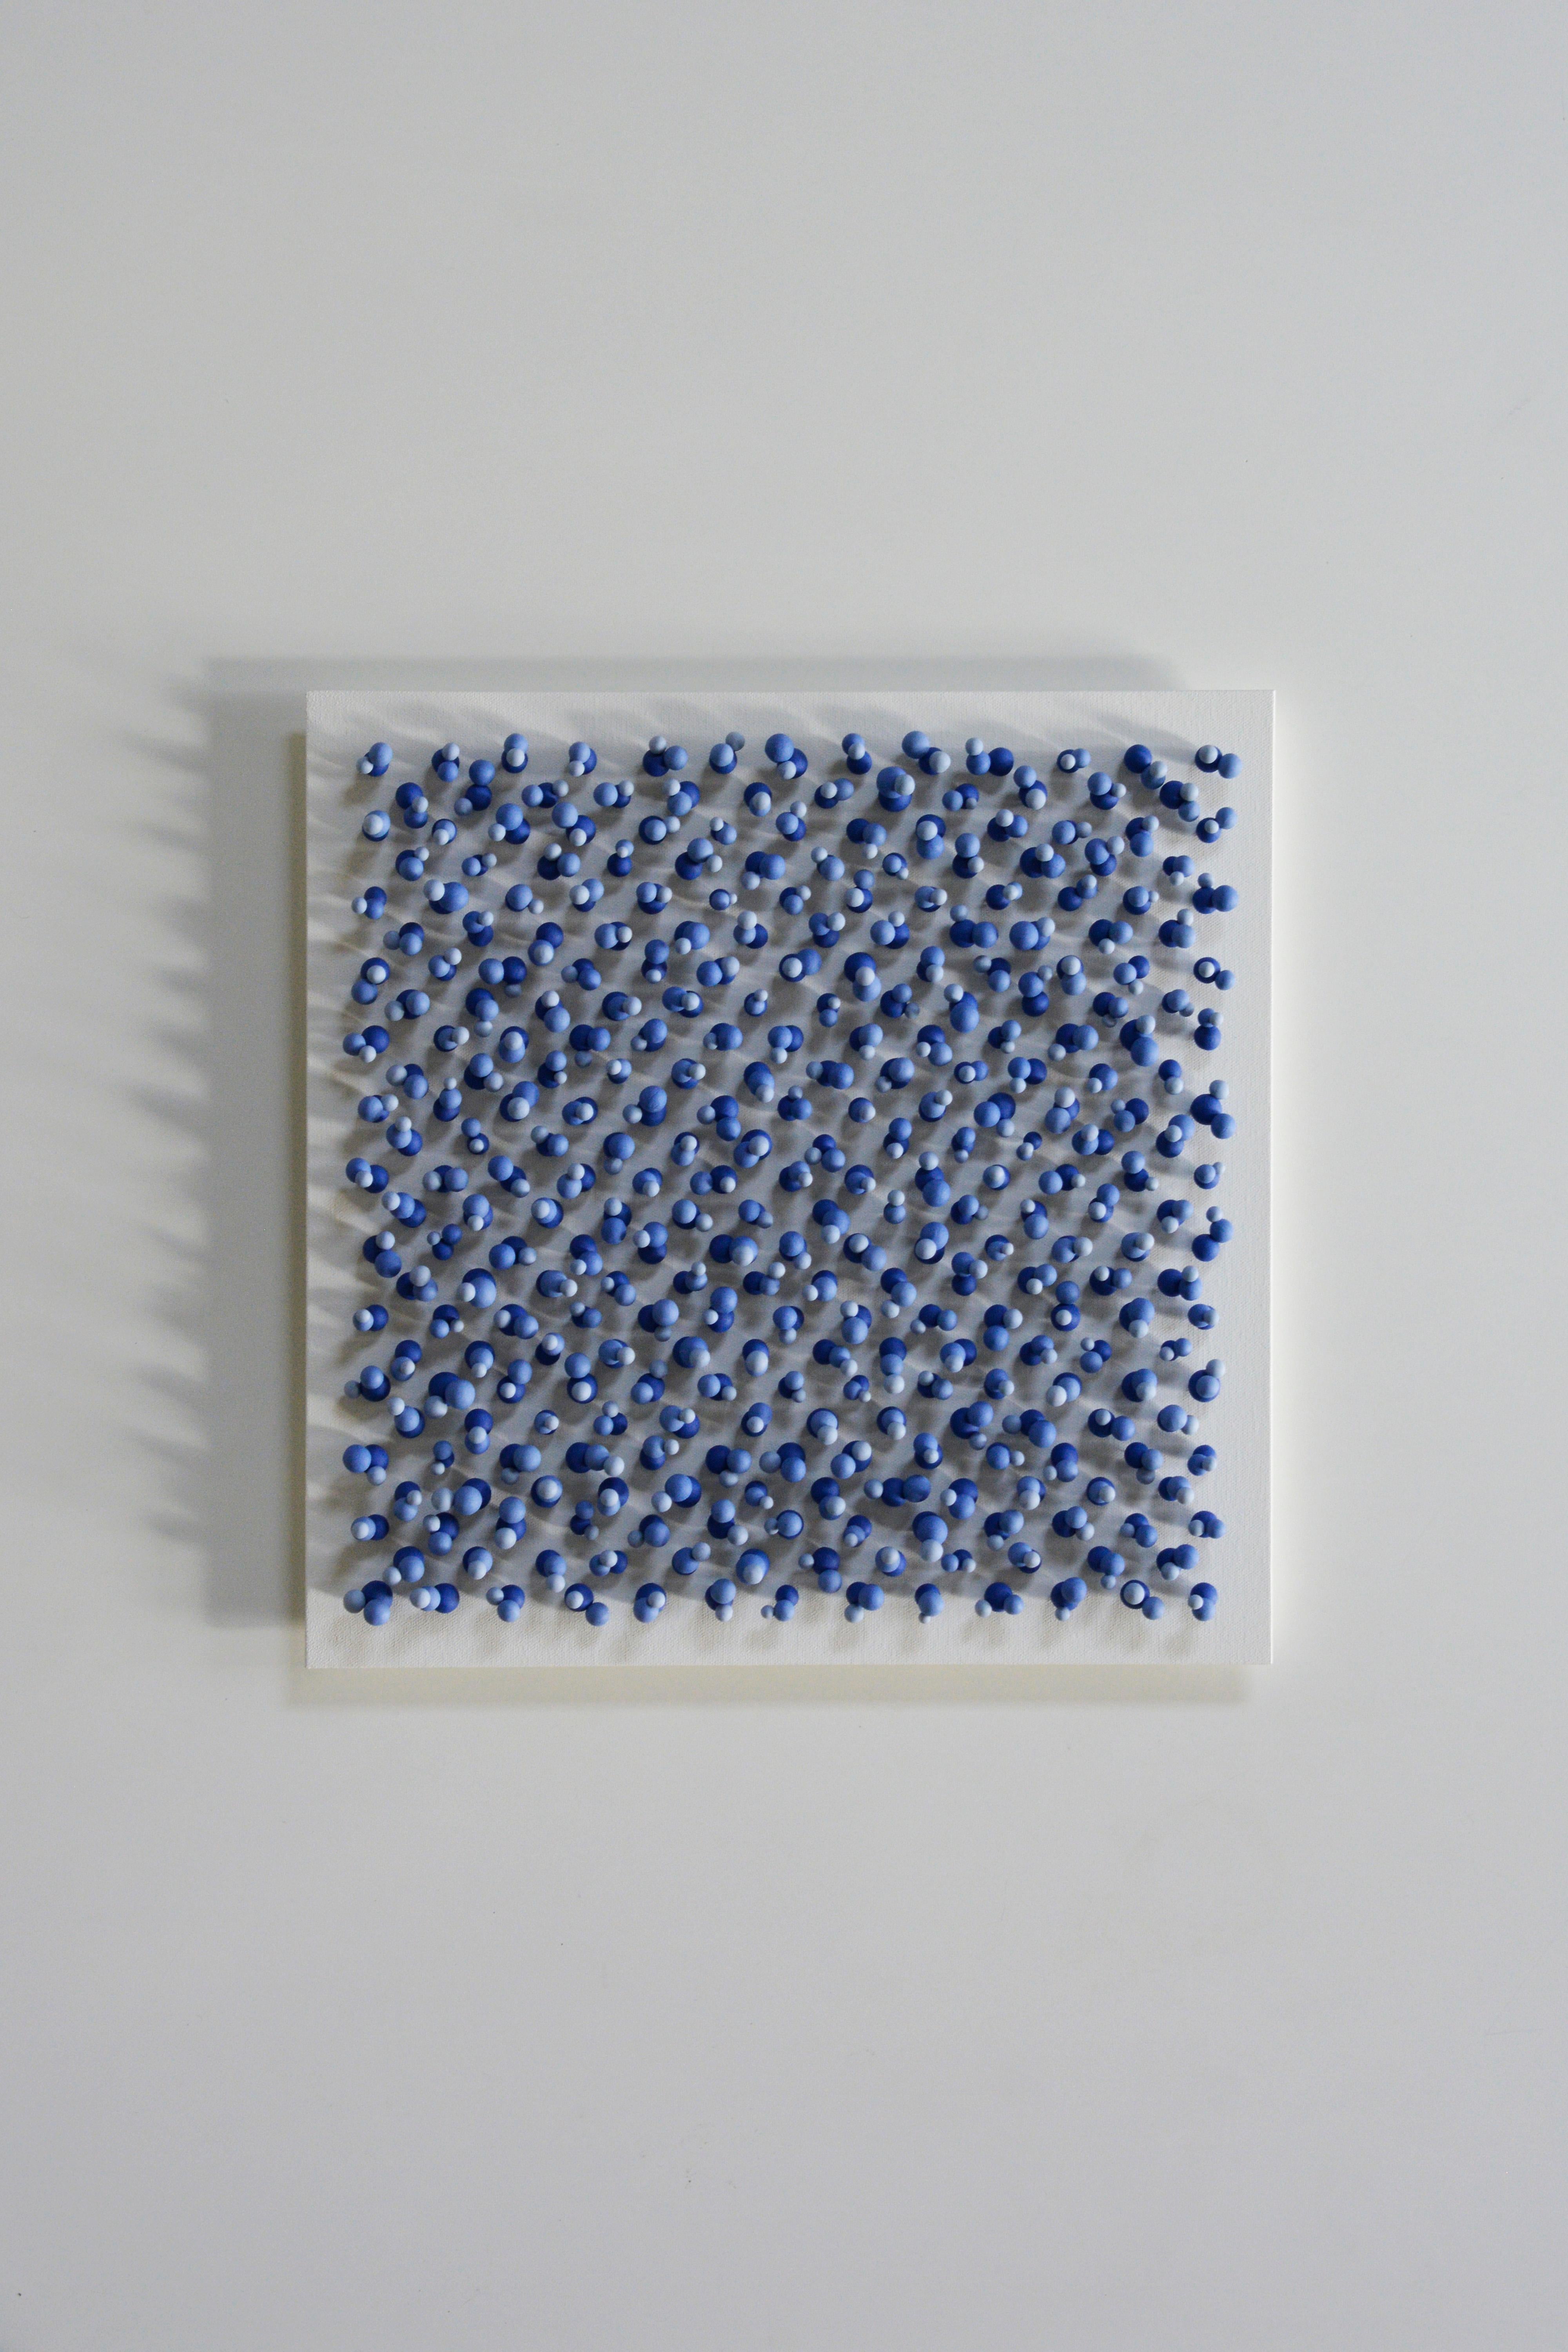 Jonne Stout (1993) studierte an der Hochschule der Künste in Utrecht (HKU) und machte 2019 seinen Abschluss. Keramik ist ein wichtiges MATERIAL in ihrer Arbeit, sie sucht nach spezifischen Eigenschaften dieses Materials wie Textur und Klang. Jonne